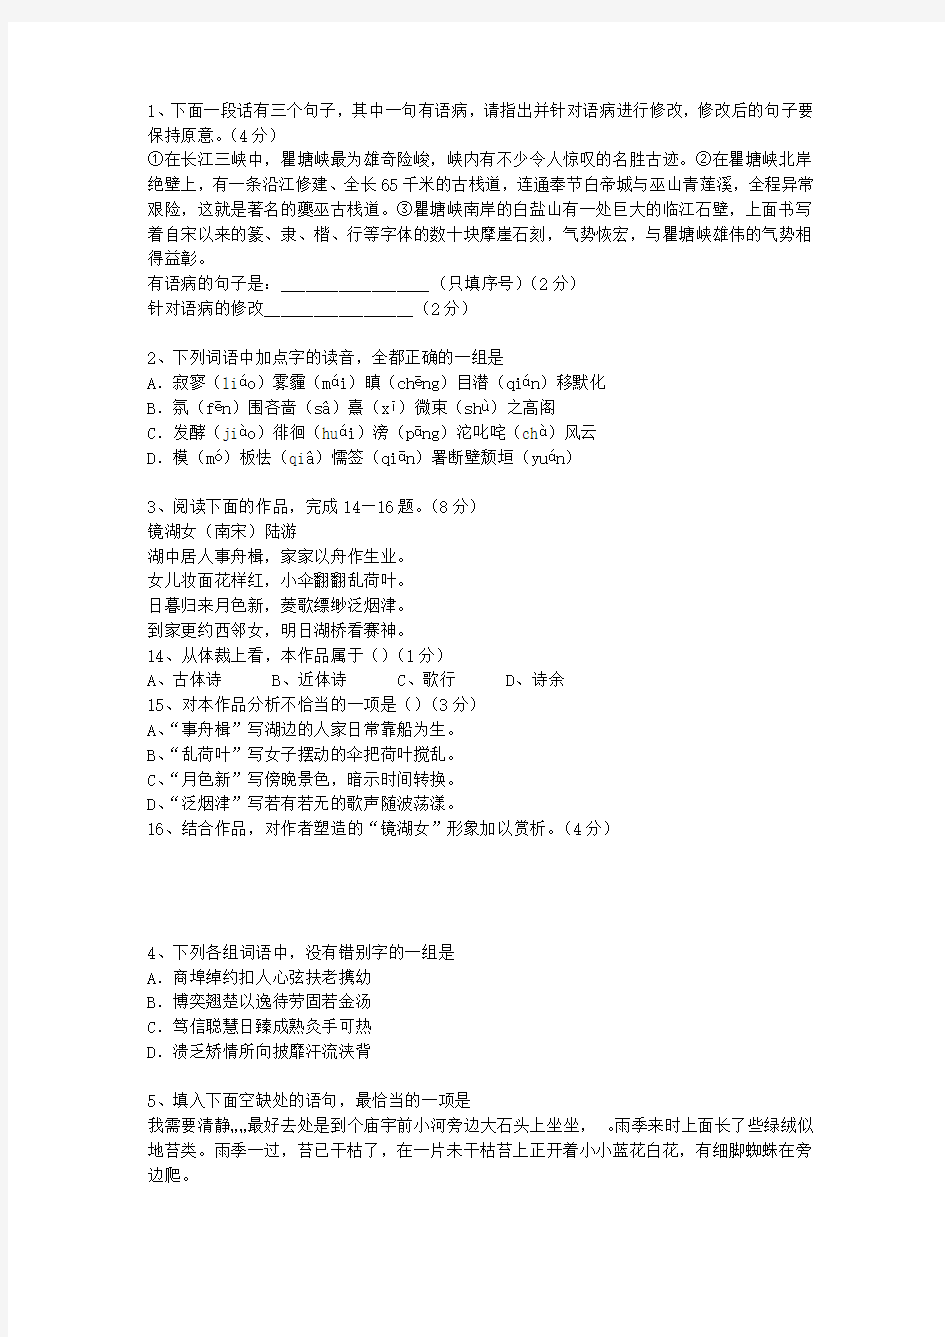 2014香港特别行政区语文试卷真题最新考试试题库(完整版)